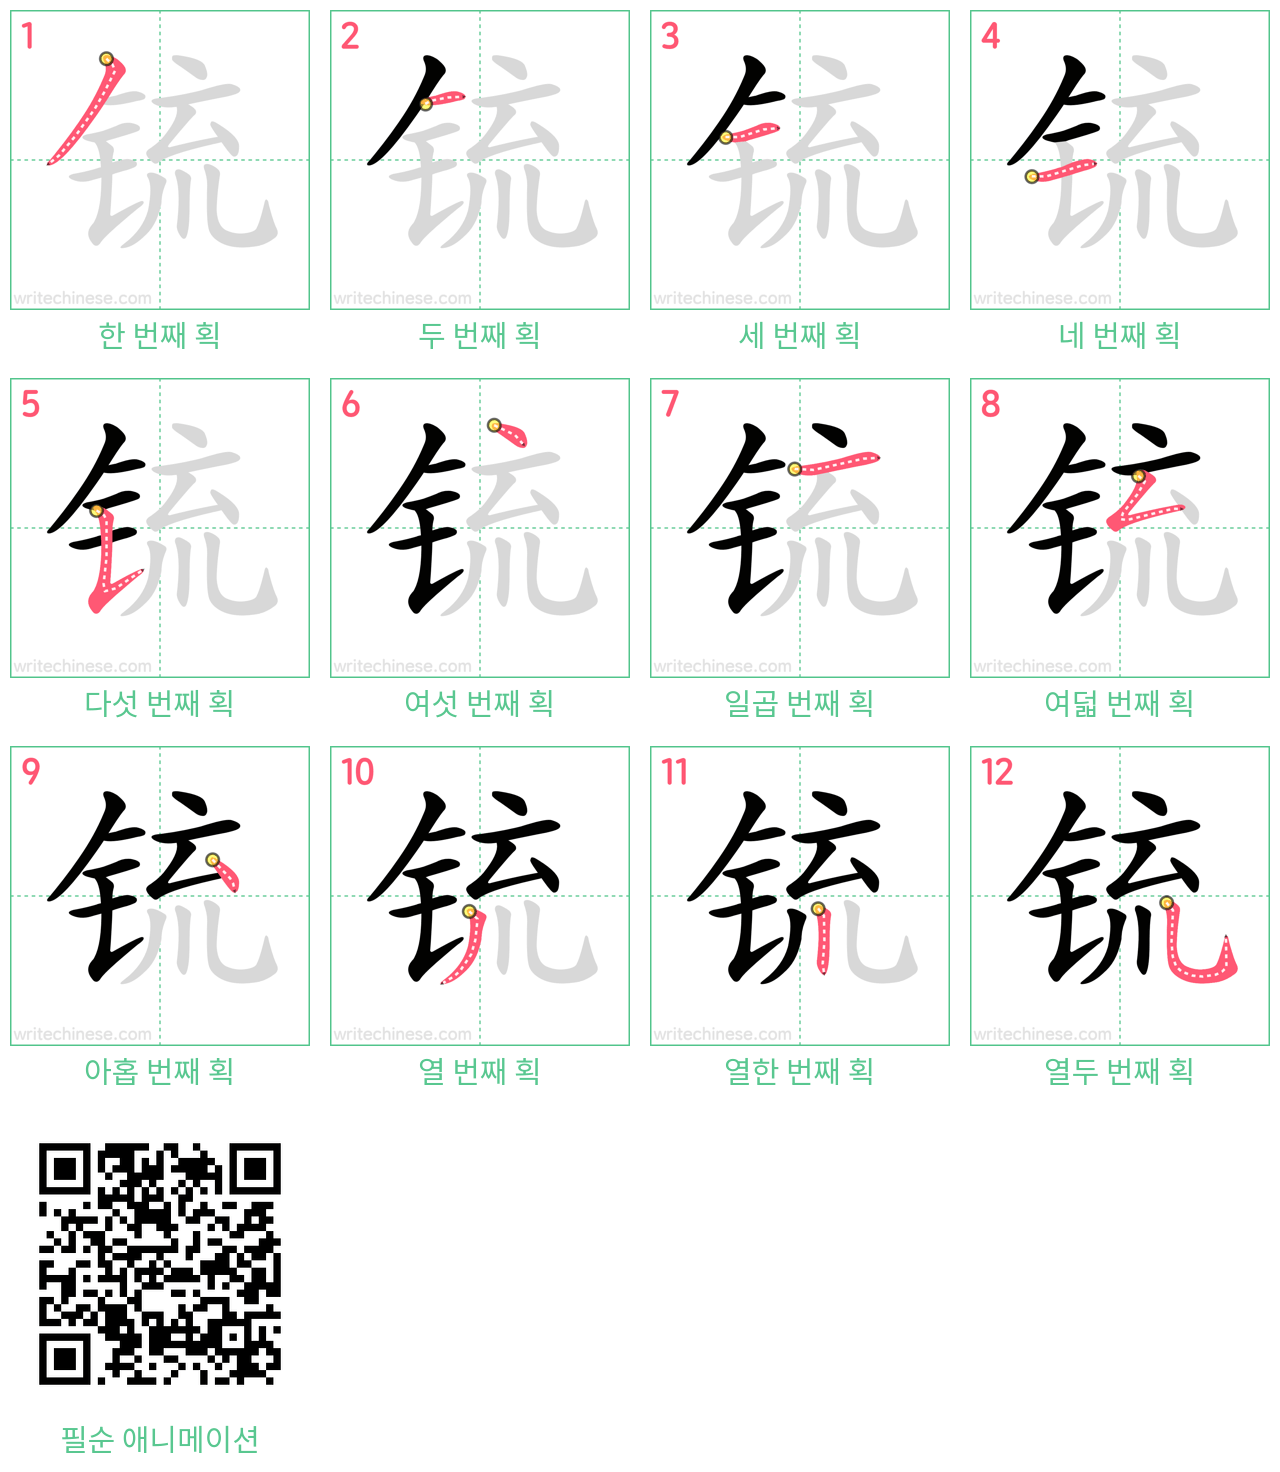 锍 step-by-step stroke order diagrams